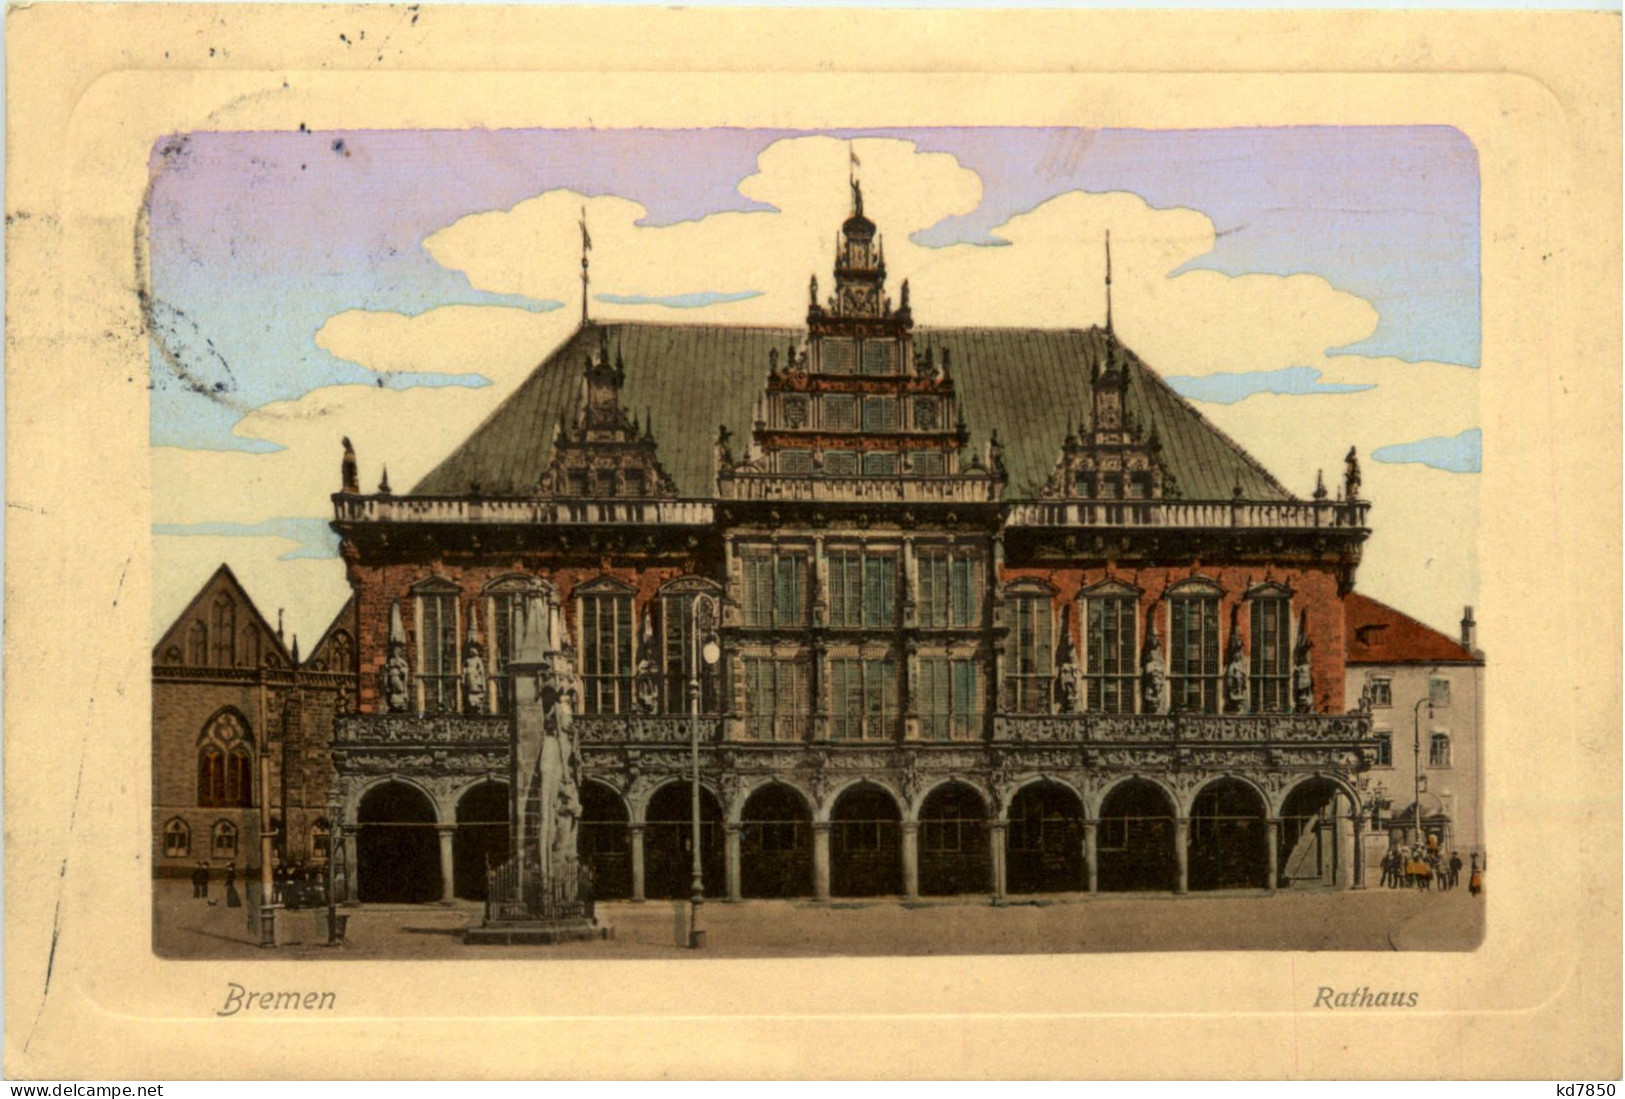 Bremen, Rathaus - Bremen